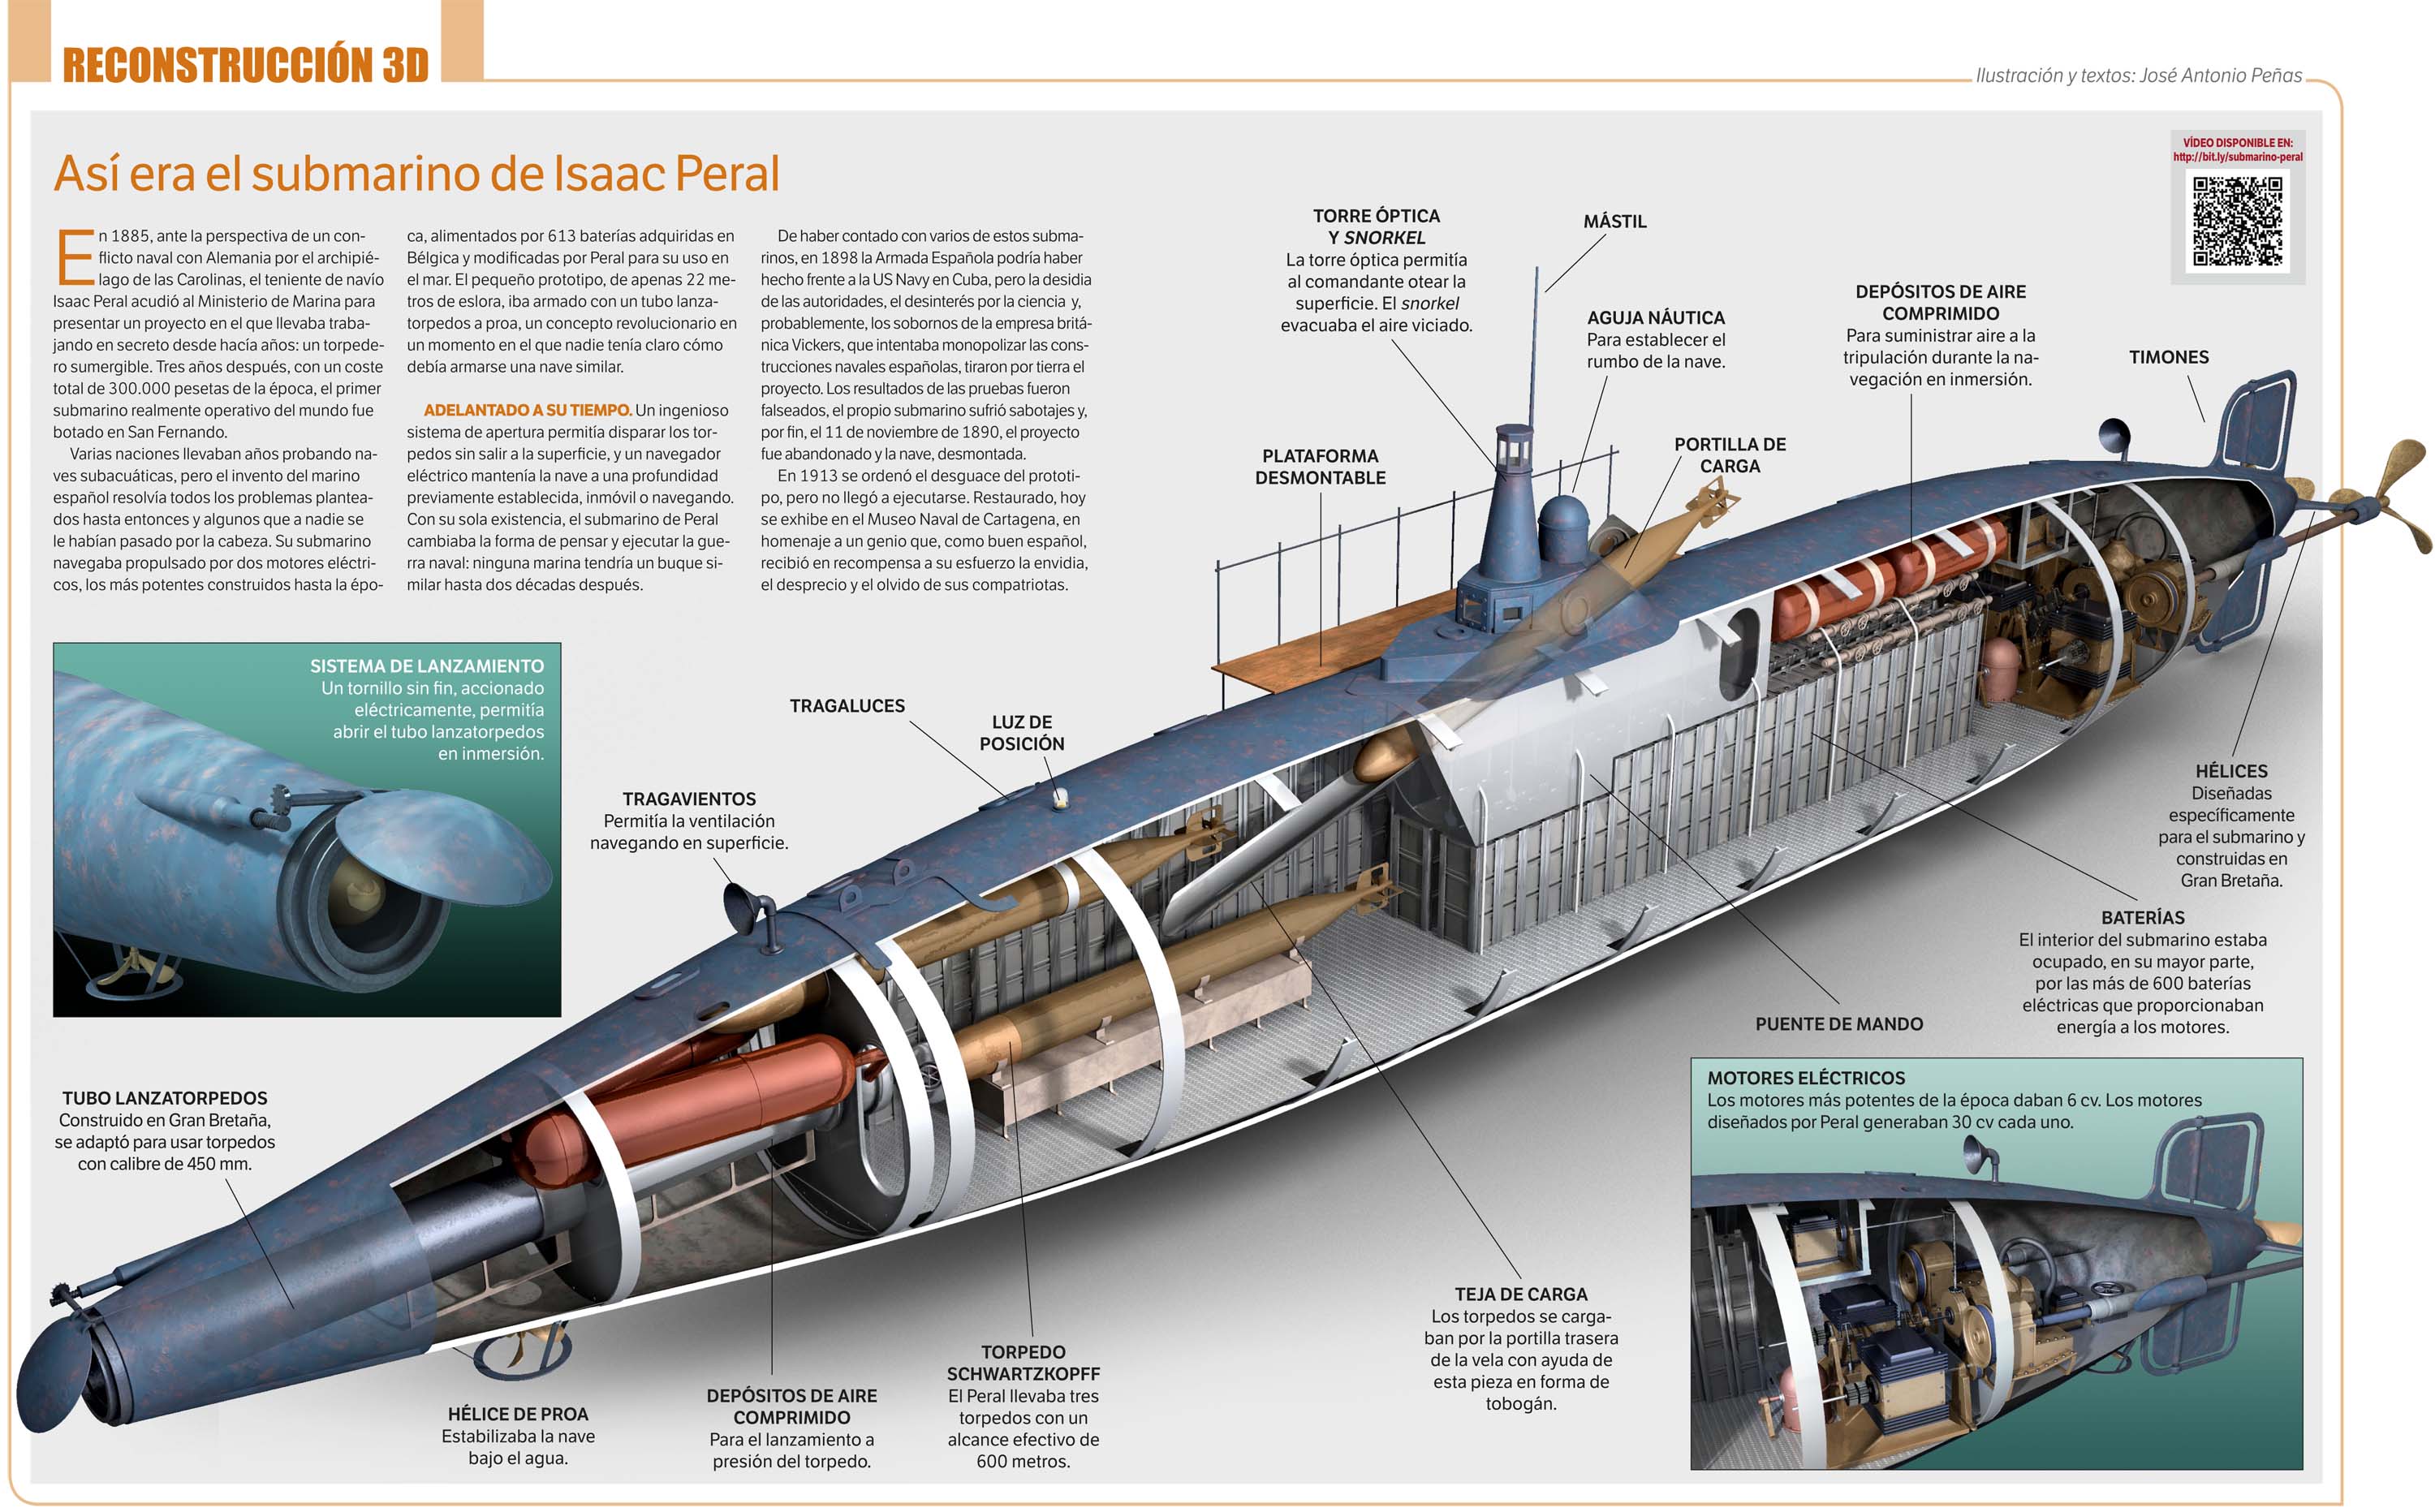 [Fusion] Engins et technologies à potentiel uchronique - Page 2 Submarino_3d_by_japa2-d98bb8w